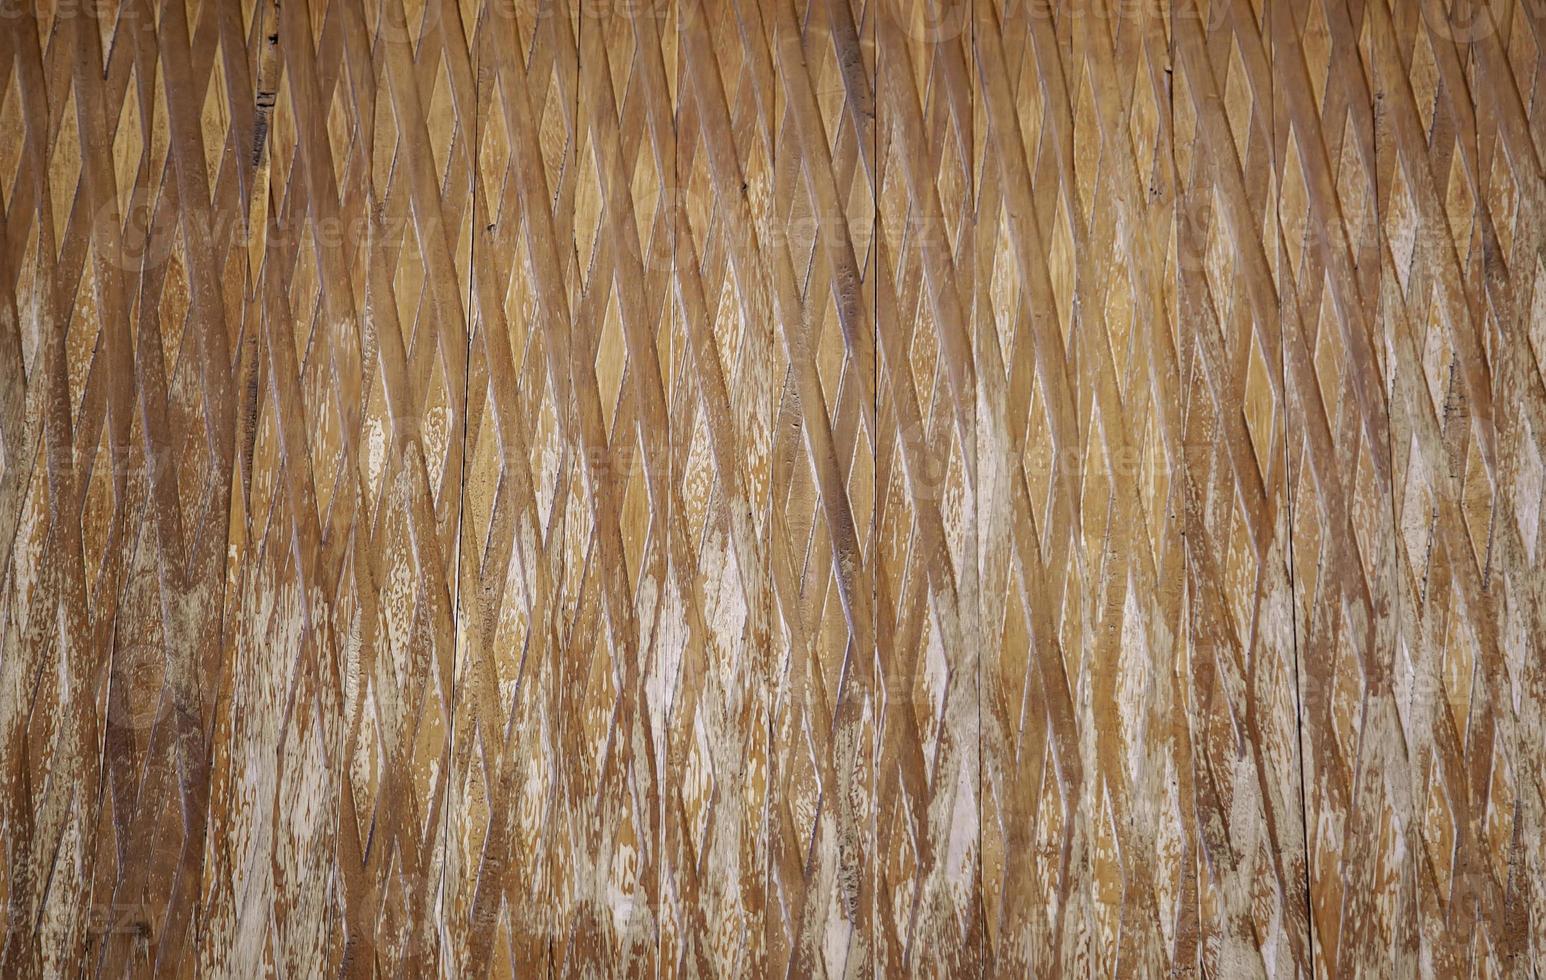 houten muur textuur foto